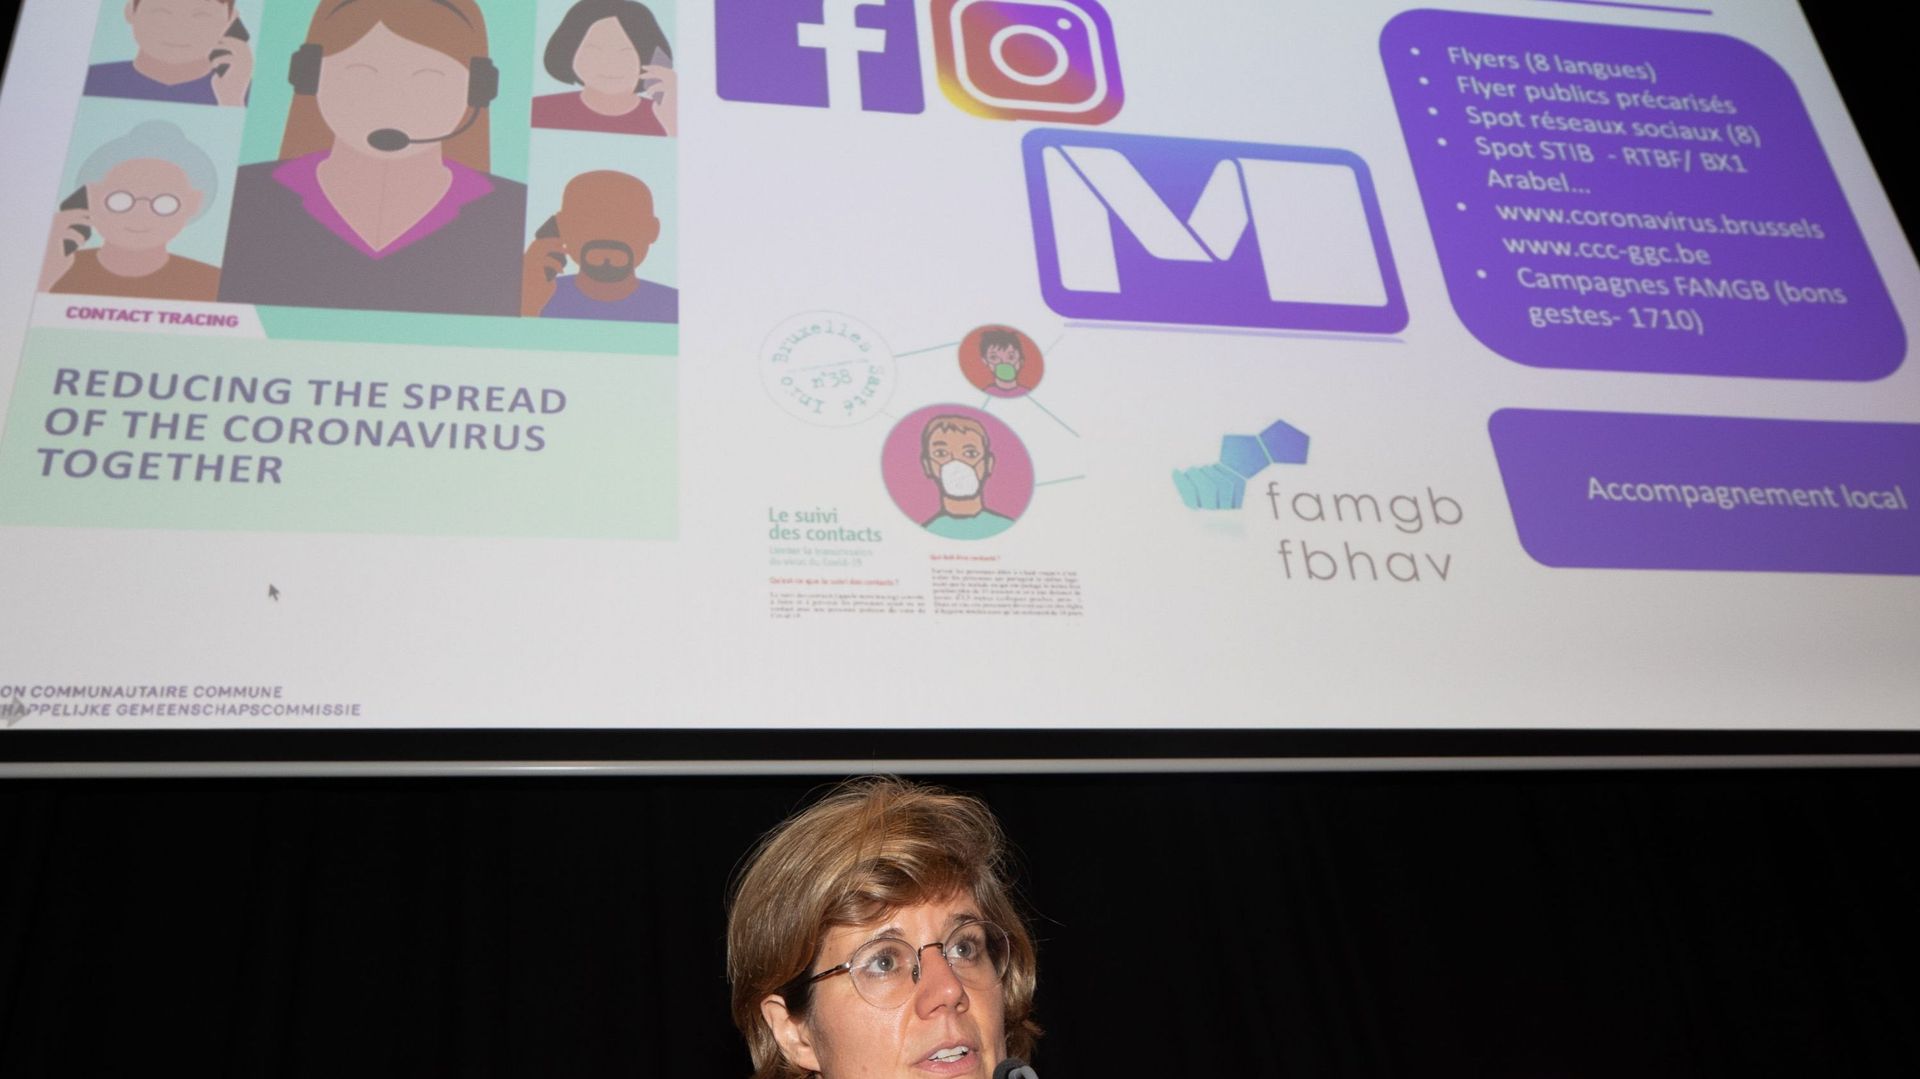 Inge Neven, la responsable des services de tracing et de vaccination pour la Région bruxelloise, lors d’une conférence de presse en août 2020